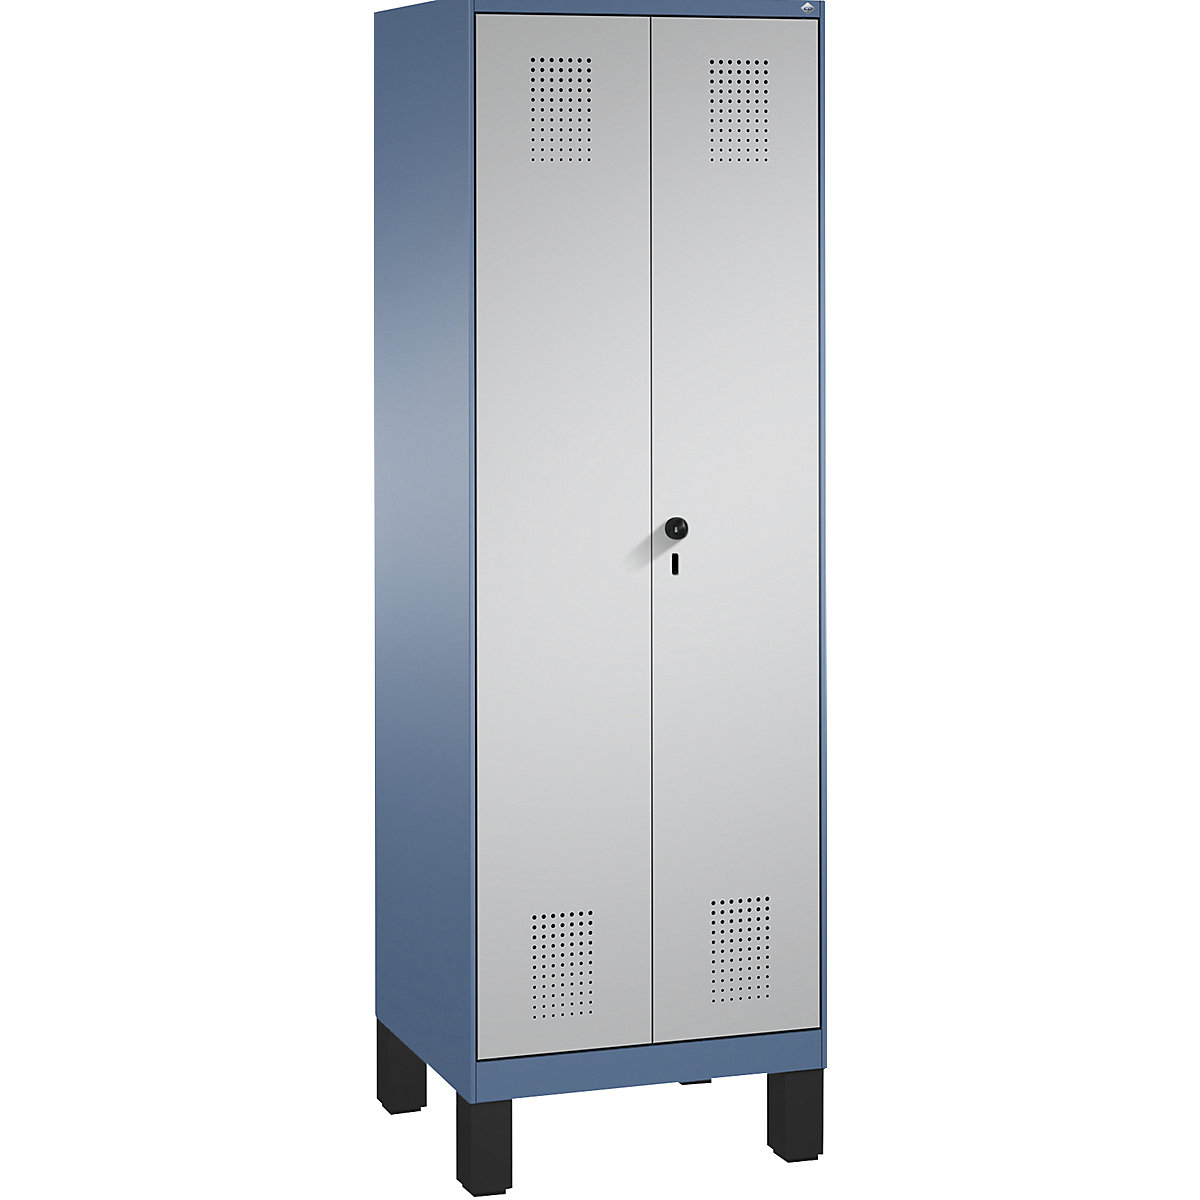 Szafa do przechowywania EVOLO, drzwi zamykane do siebie, z nogami – C+P, 2 przedziały, 8 półek, szer. przedziału 300 mm, niebiesko-mglista / biały aluminium-13